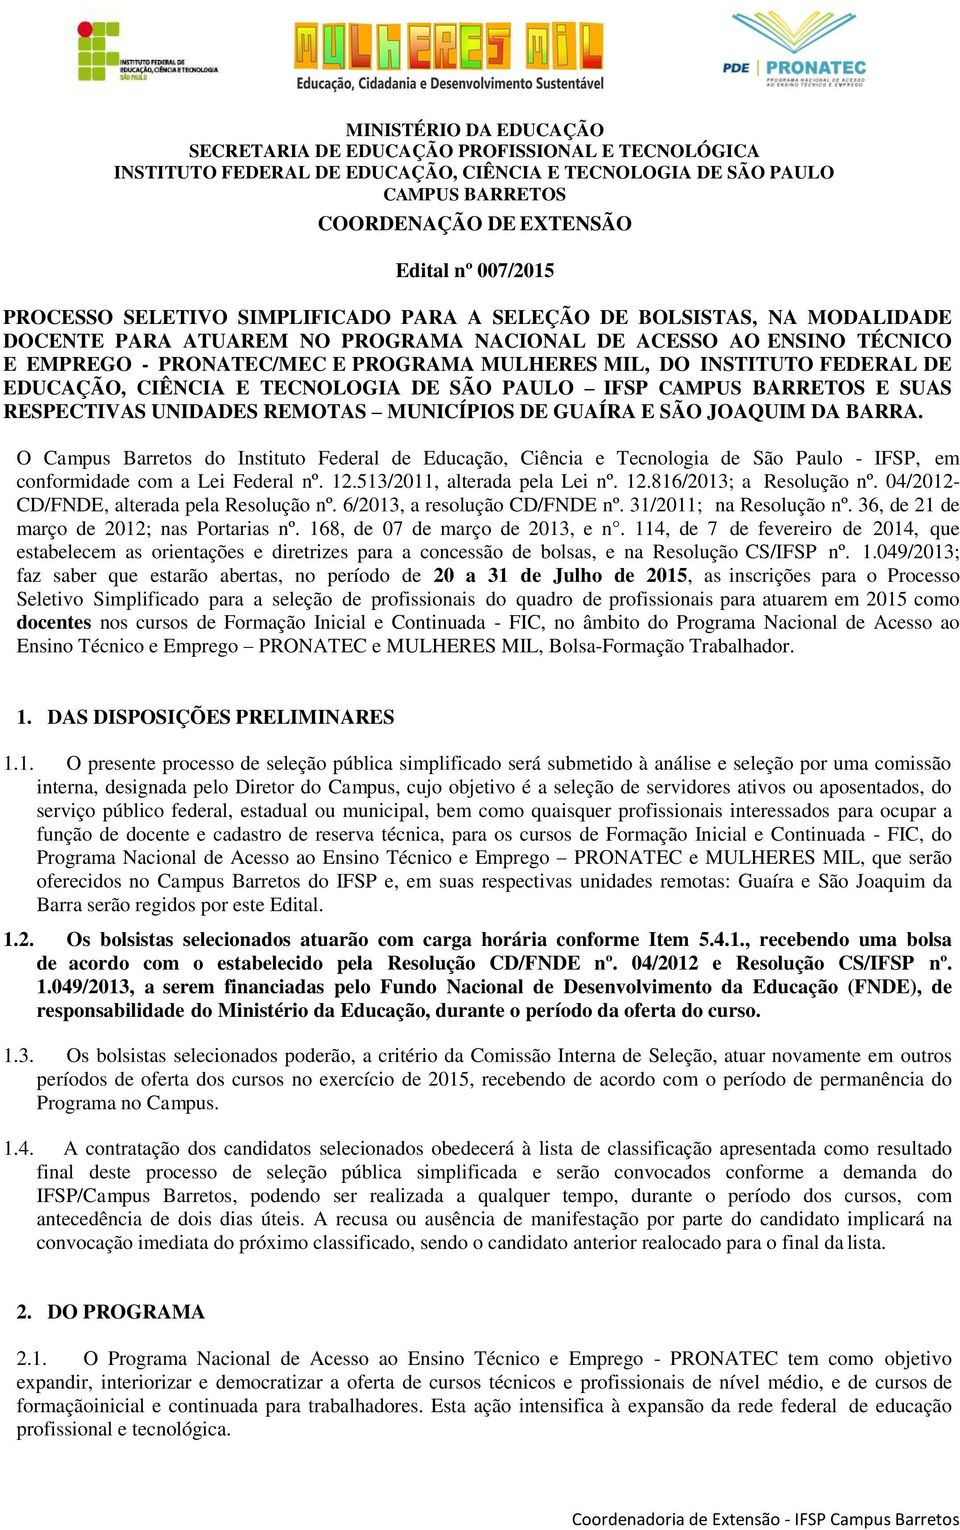 O Campus Barretos do Instituto Federal de Educação, Ciência e Tecnologia de São Paulo - IFSP, em conformidade com a Lei Federal nº. 12.513/2011, alterada pela Lei nº. 12.816/2013; a Resolução nº.